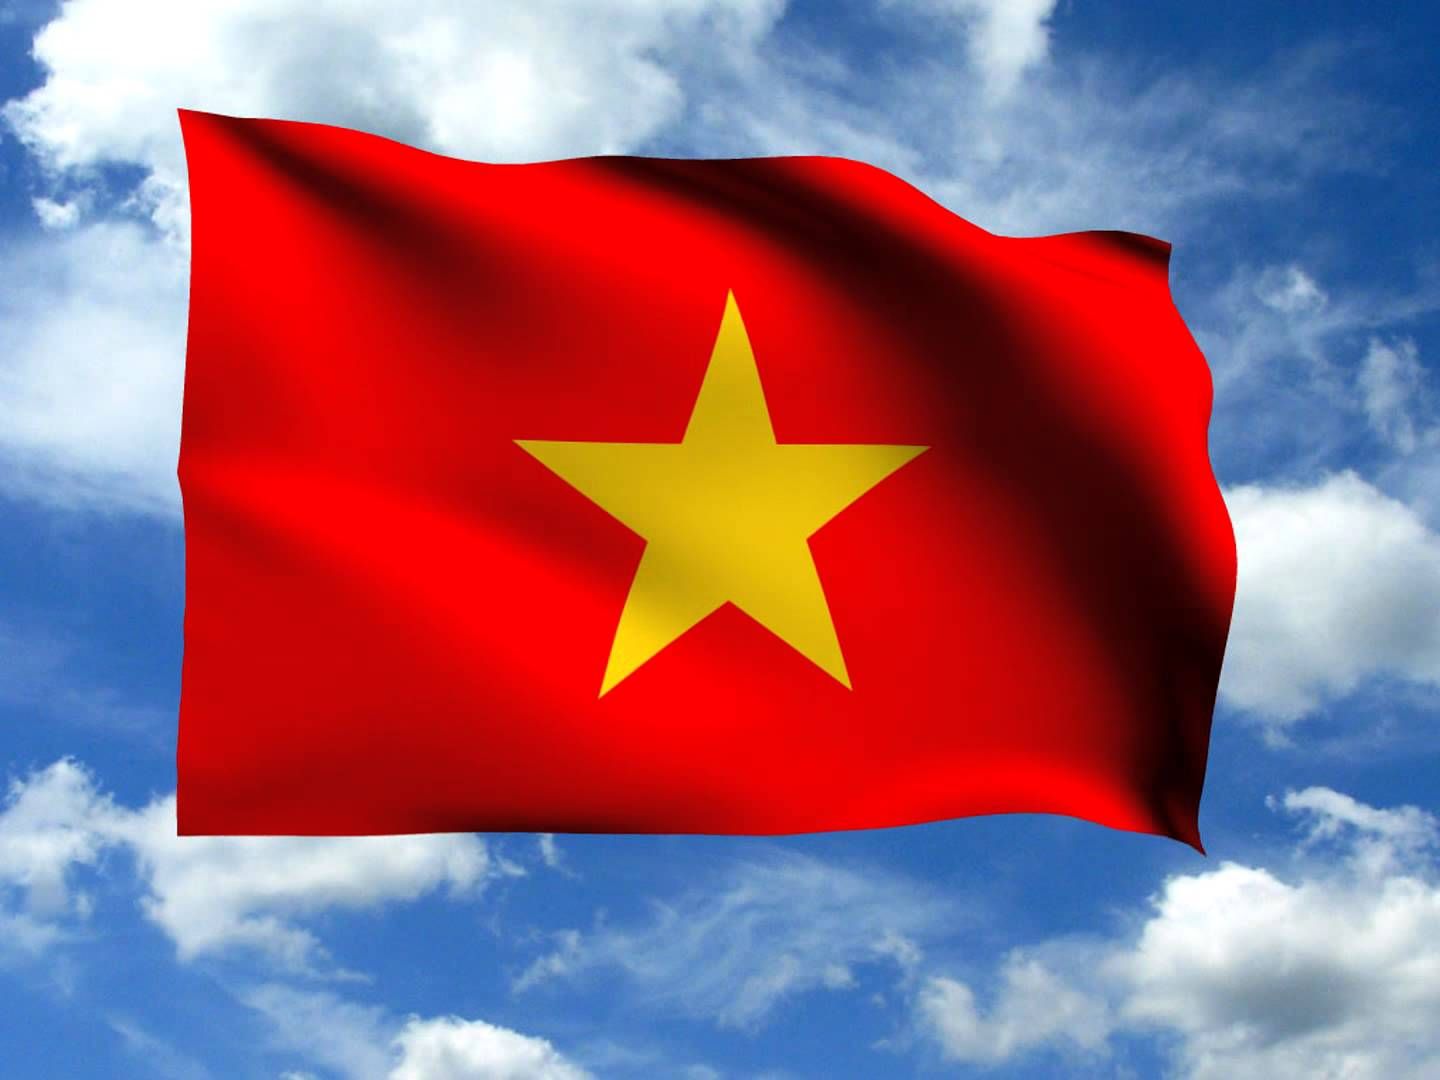 Avatar Việt Nam đẹp: Chọn một avatar Việt Nam đẹp để thể hiện tình yêu quê hương của bạn. Bộ sưu tập avatar này chứa đựng những hình ảnh độc đáo, cùng với các kích thước và định dạng khác nhau dễ dàng sử dụng trên các mạng xã hội.